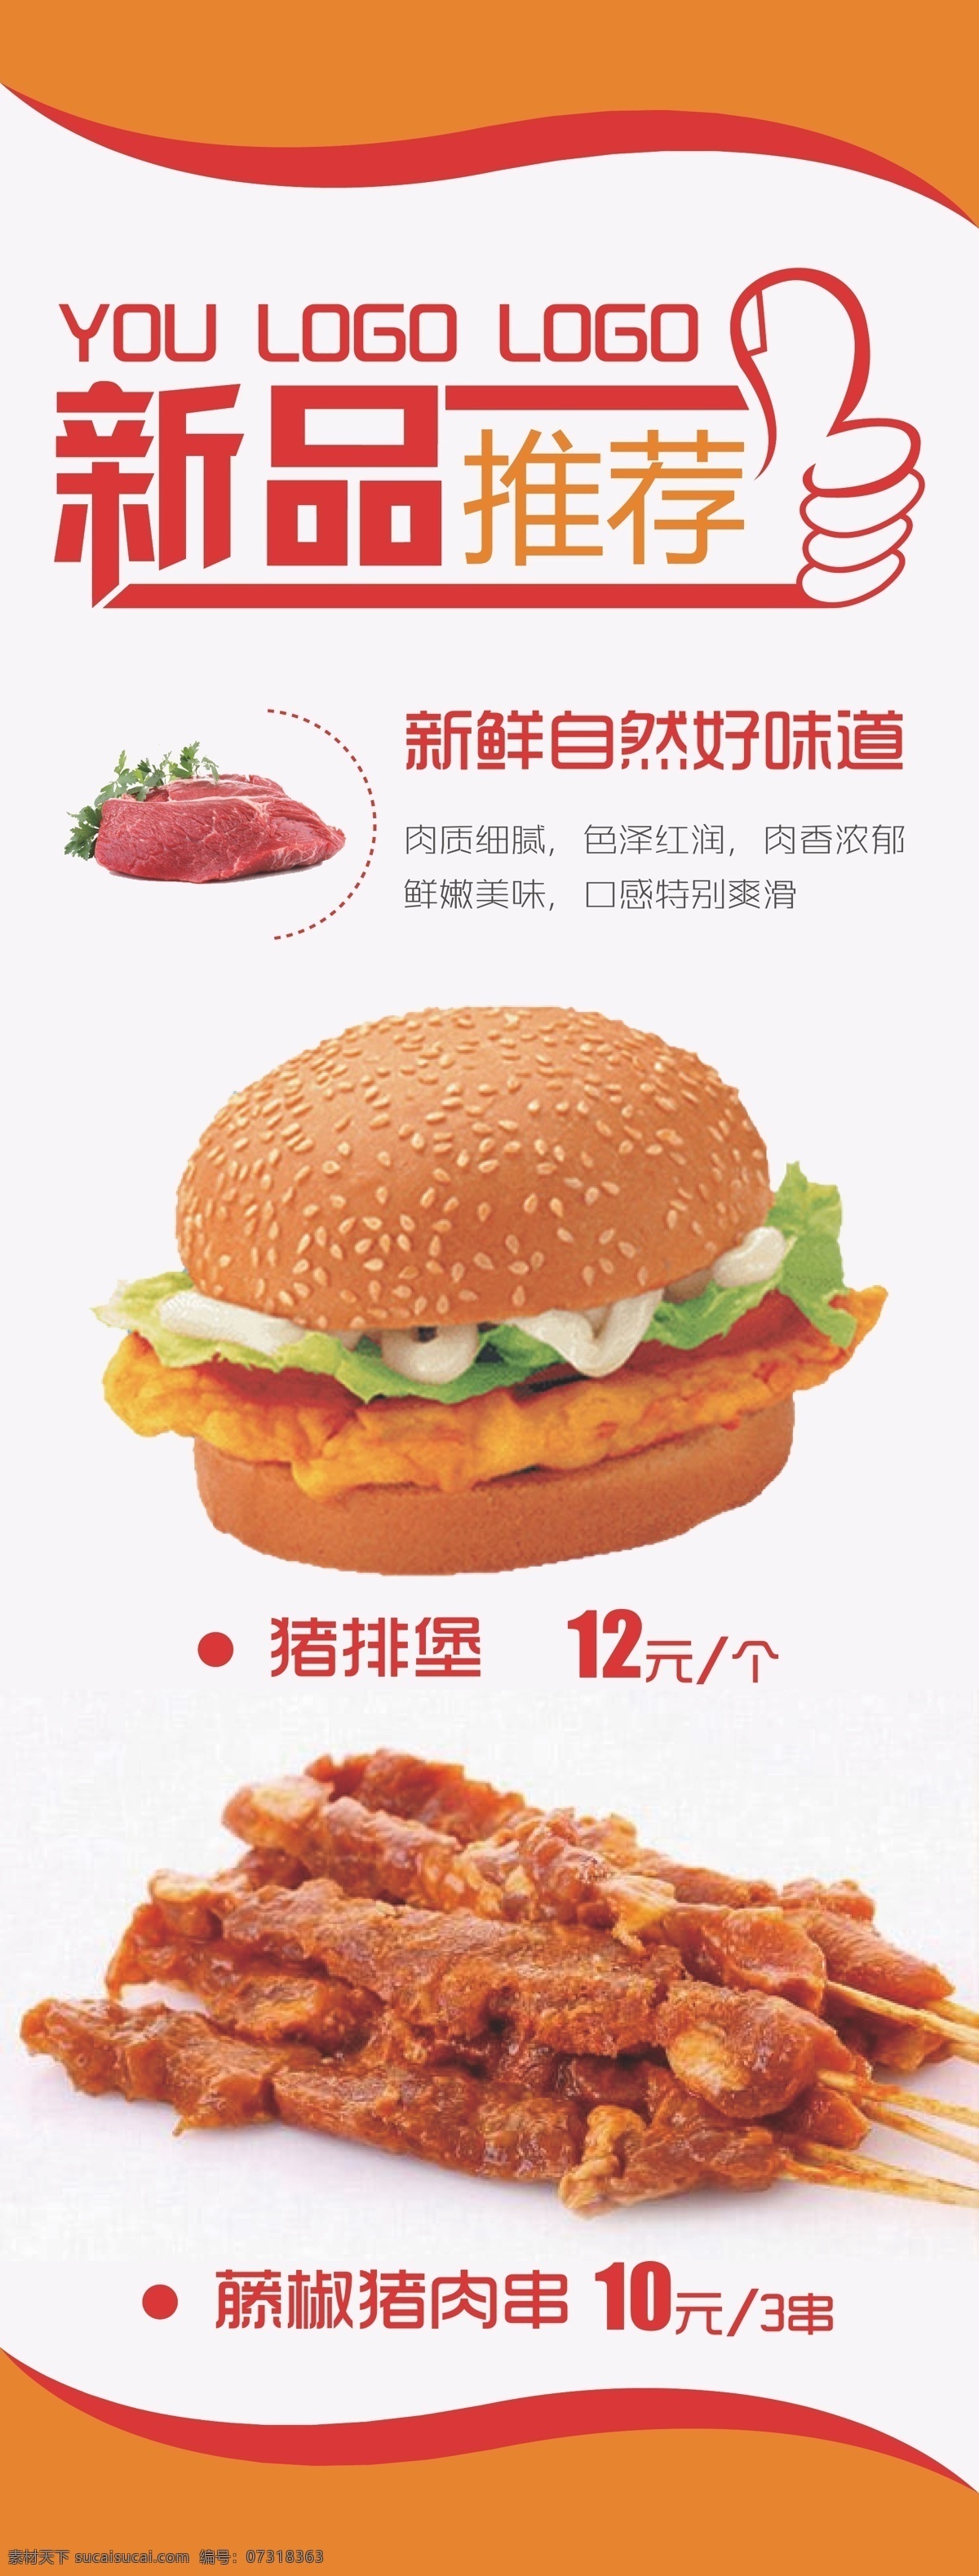 新品推荐 汉堡 展架 新品 推荐 美食 新鲜美味 美食展架 藤椒猪肉串 猪排堡 展板模板